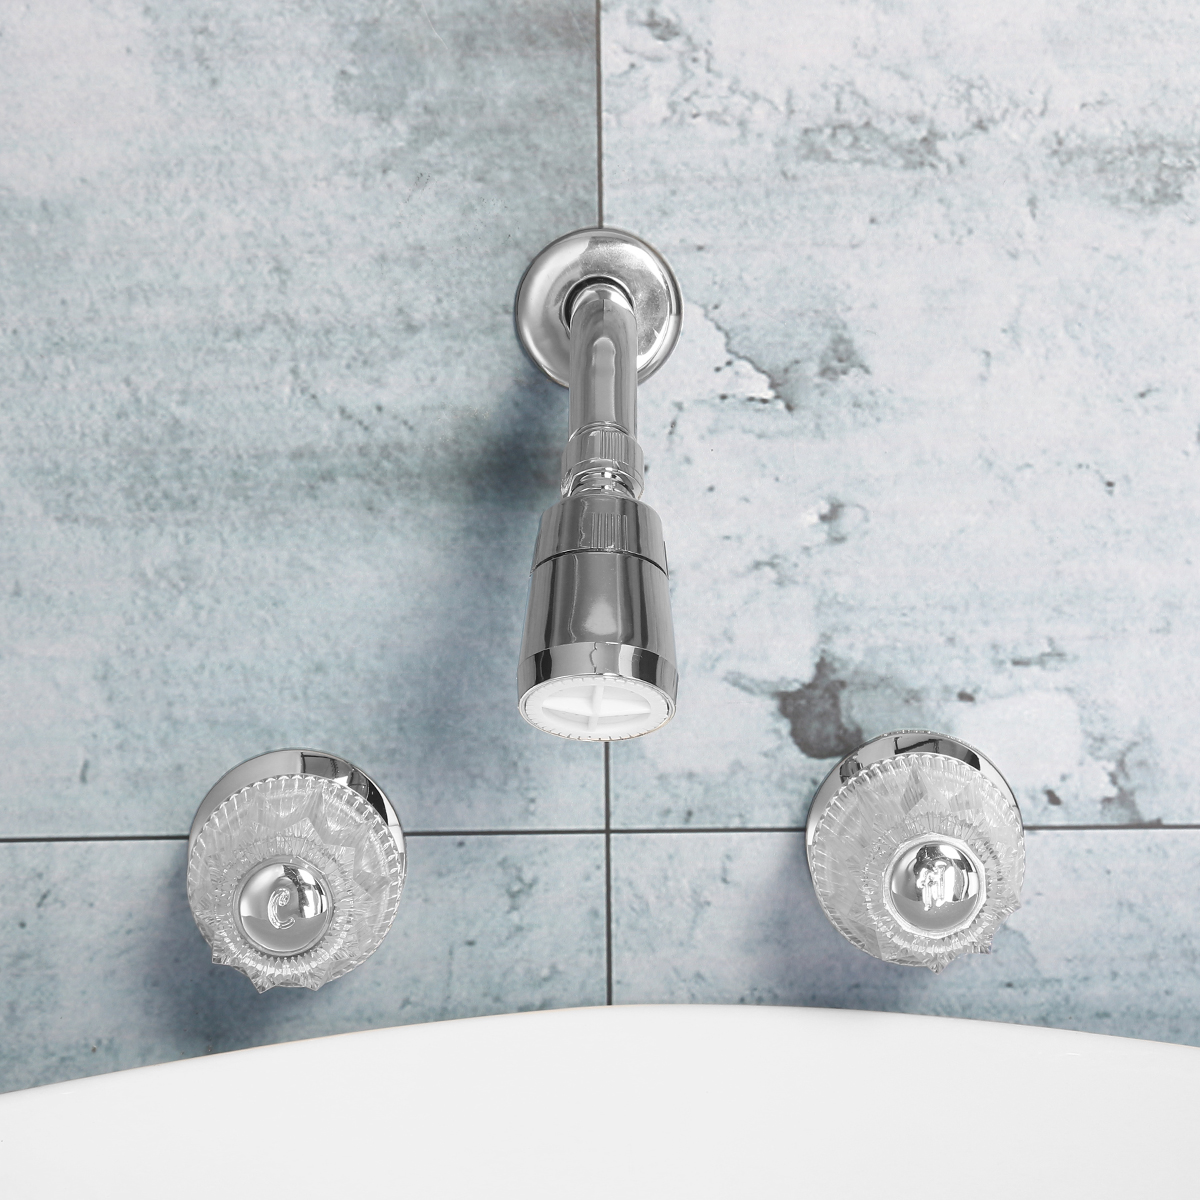 Bathroom-Basin-Shower-Mixer-Tap-Double-Handle-Brass-Bath-Tub-Shower-Head-Faucet-Spout-1267643